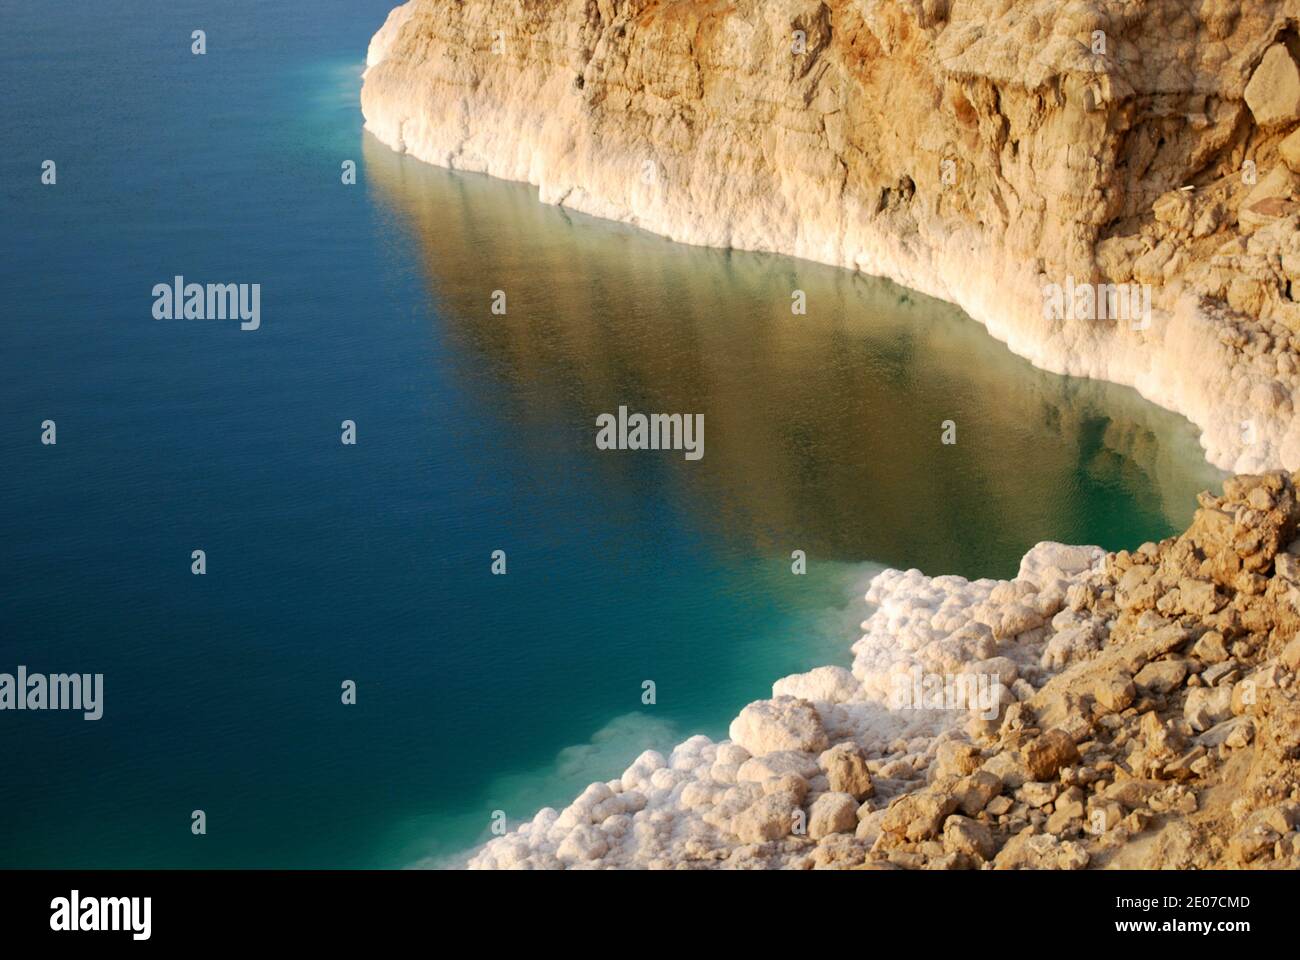 Hermoso paisaje en el Mar muerto, Jordania. La maravilla geológica del Mar muerto es una de las atracciones turísticas que debe hacer en el Medio Oriente Foto de stock